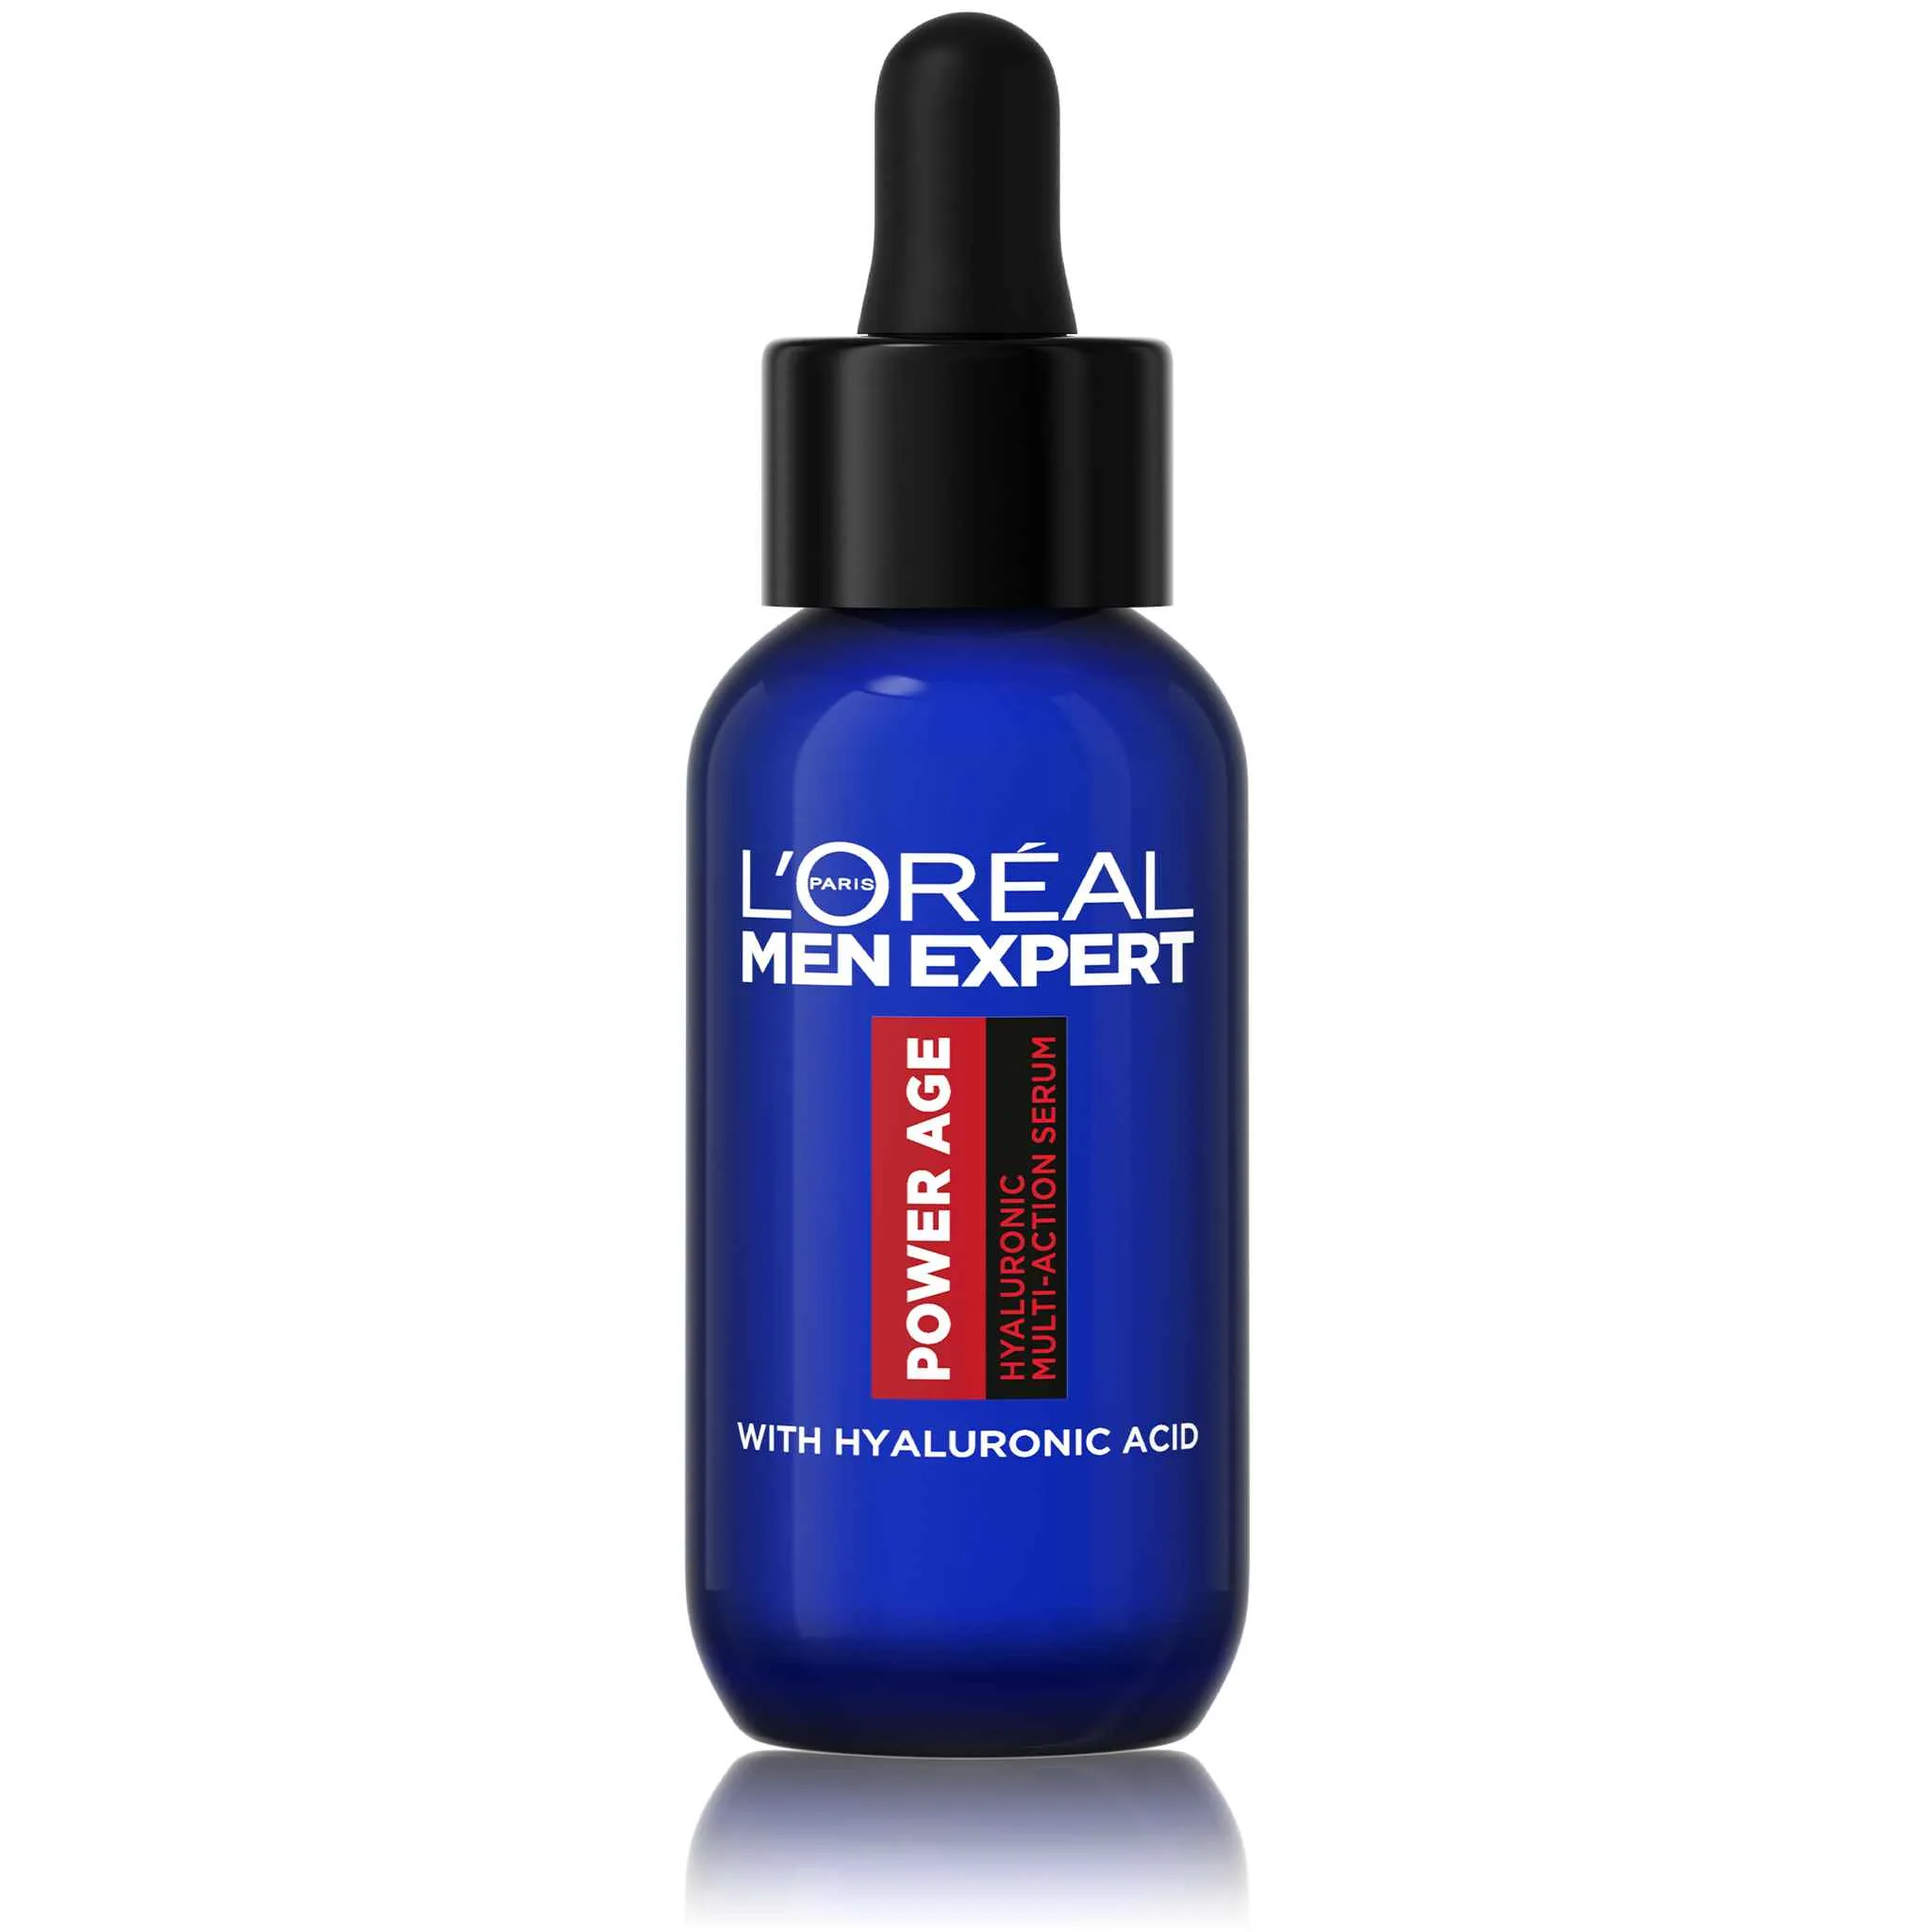 L'Oréal Paris Men Expert Power Age multifunkčné sérum s kyselinou hyalurónovou, 30 ml 1×30 ml, sérum